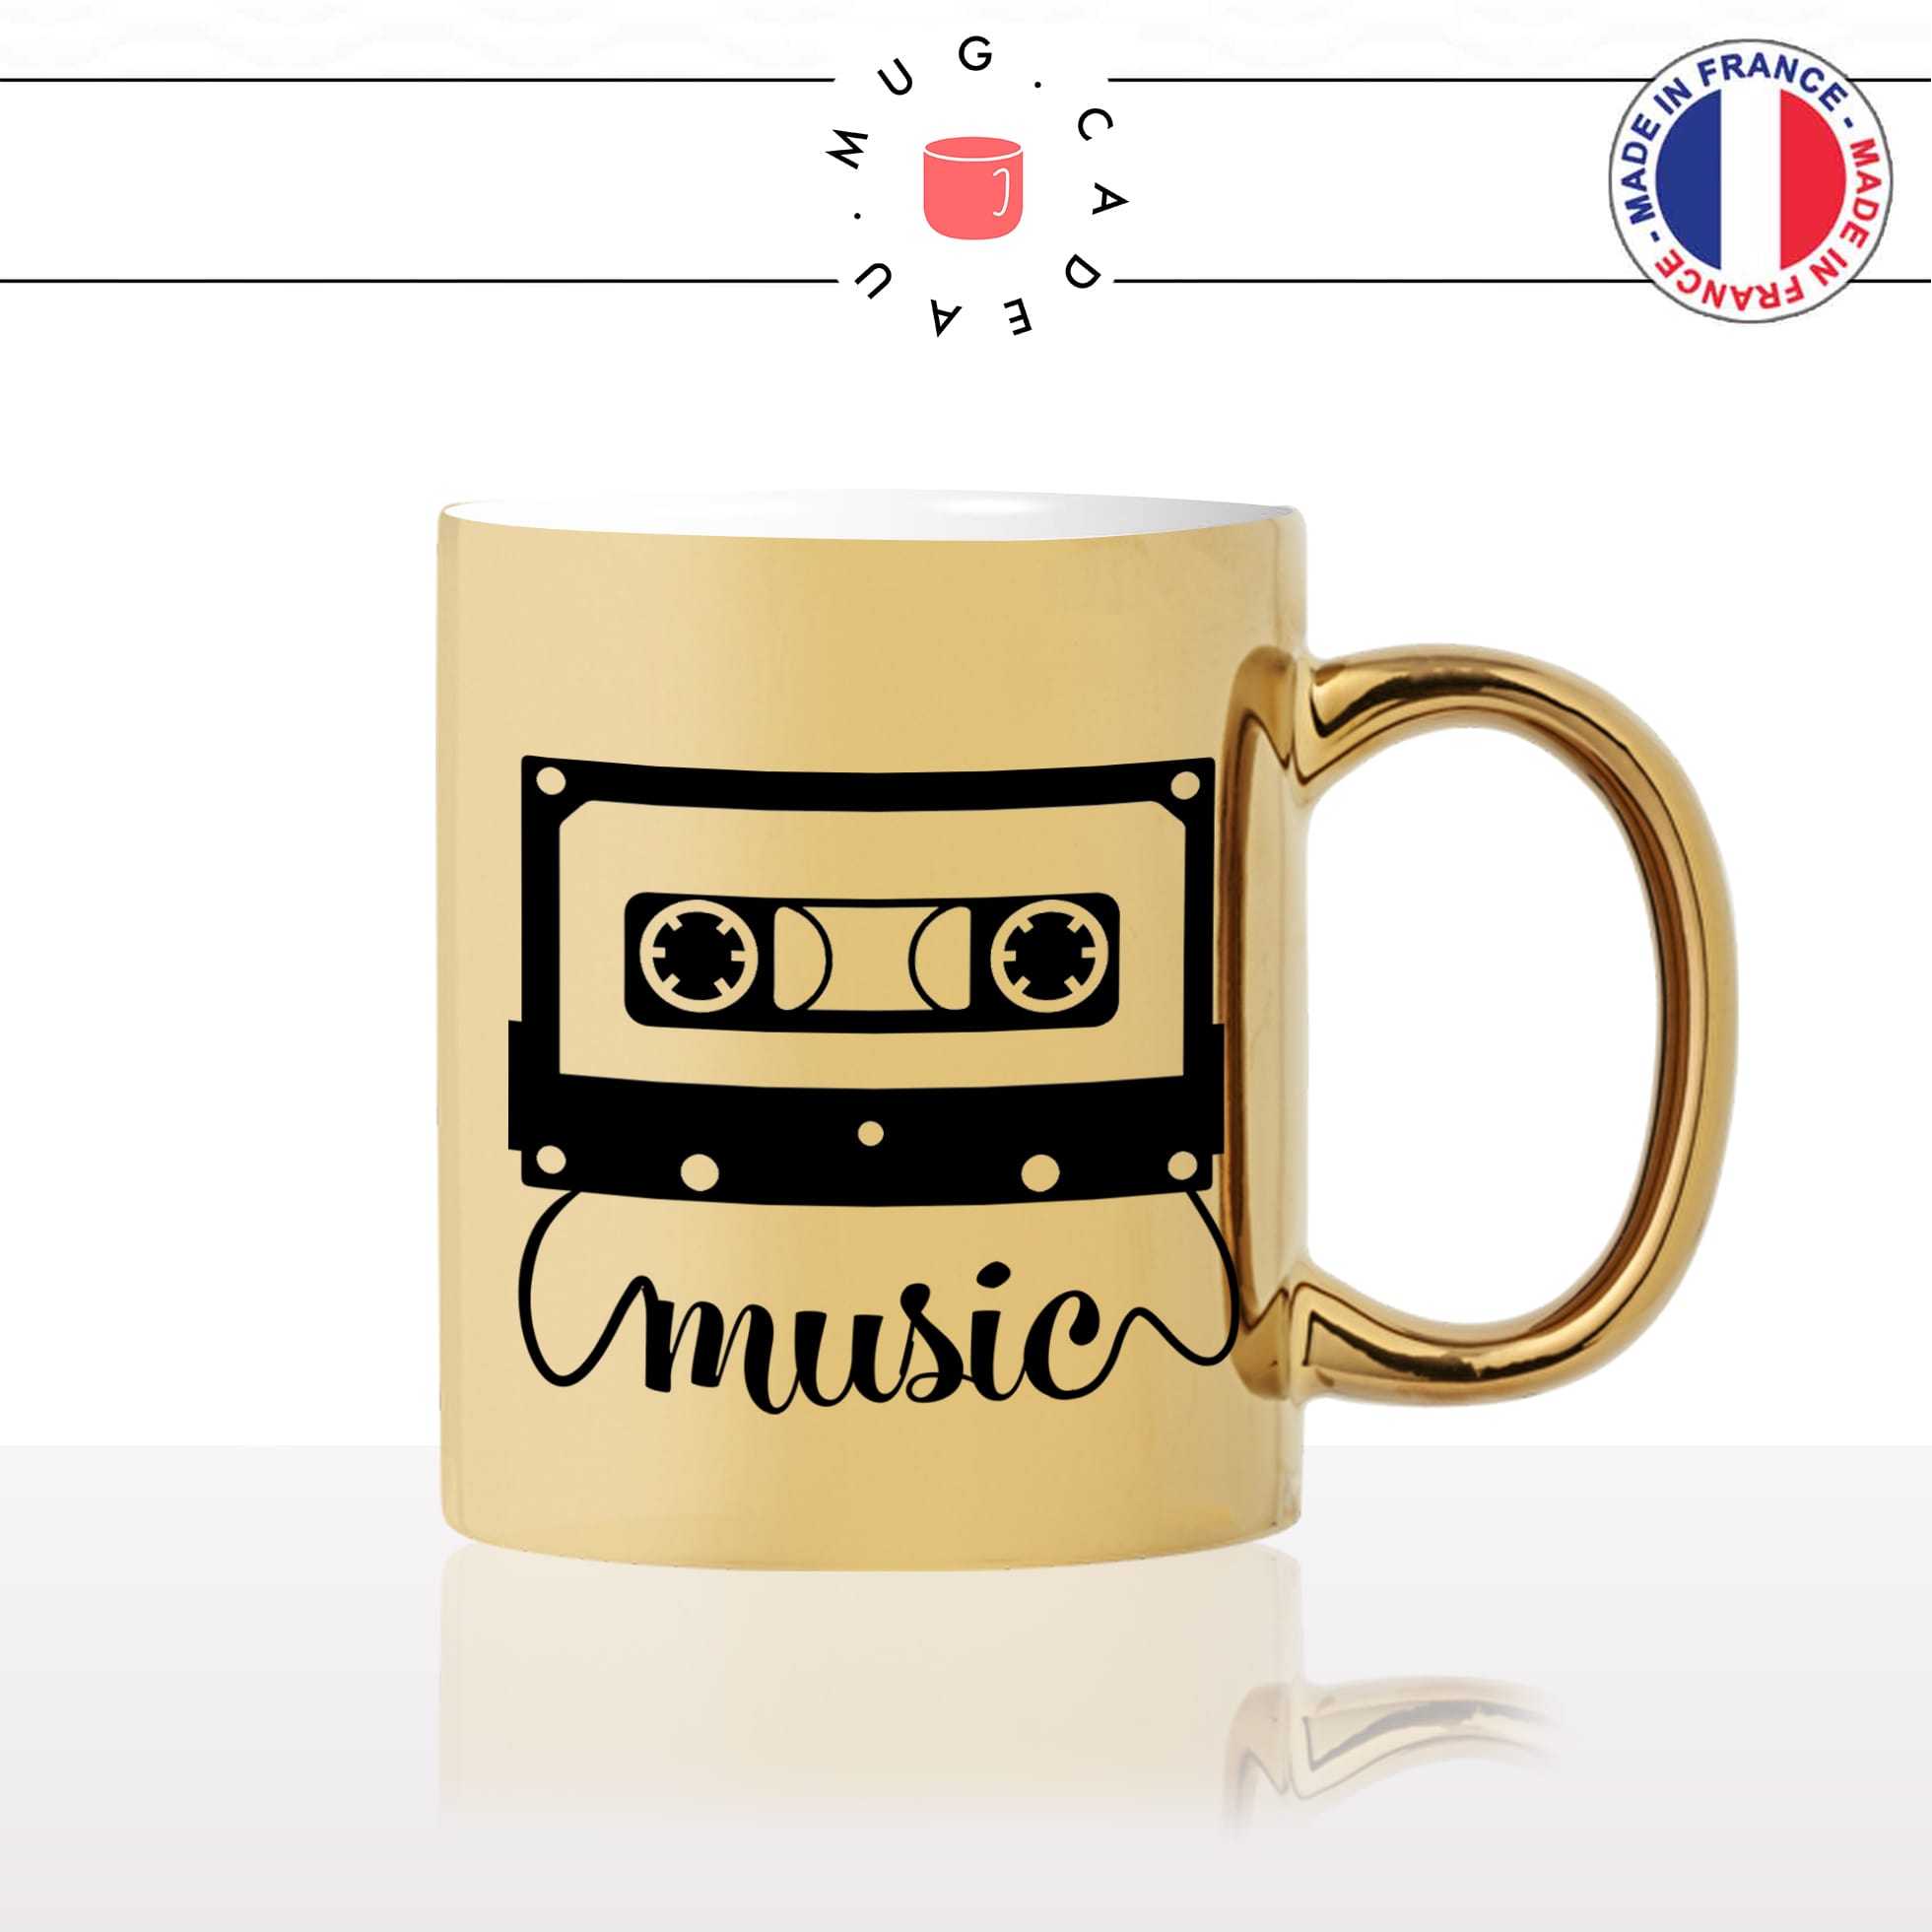 mug-tasse-or-gold-casette-de-musique-music-chansons-année-80-post-radio-fan-chanteur-idée-cadeau-originale-fun-personnalisé-café-thé2-min